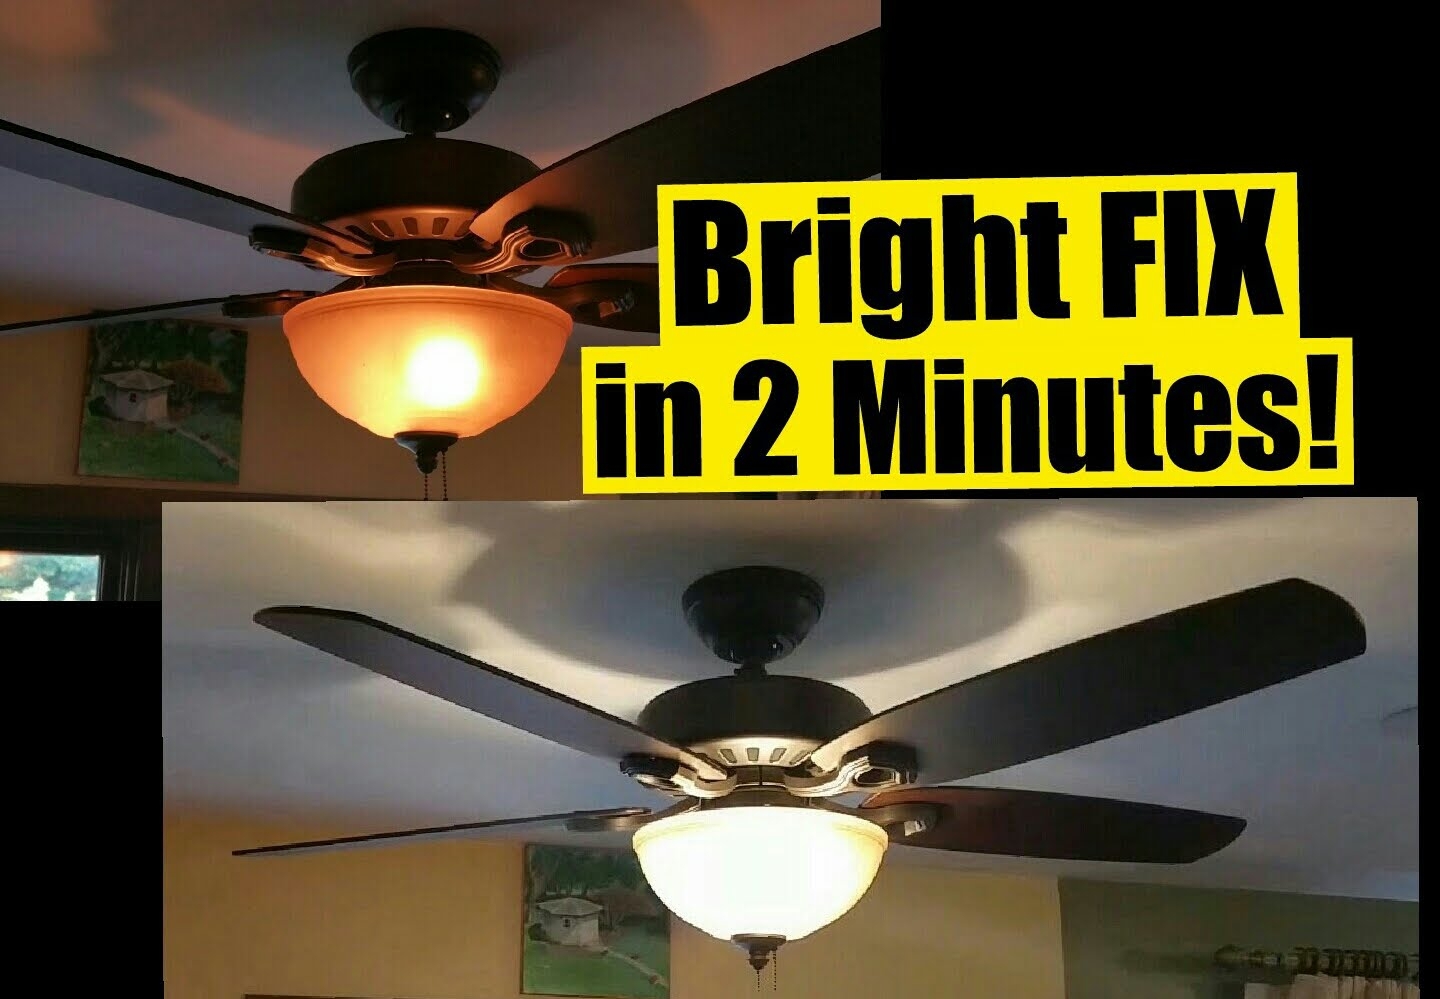 Ceiling Fan With Bright Led Lightceiling fan with bright led light ceiling lights